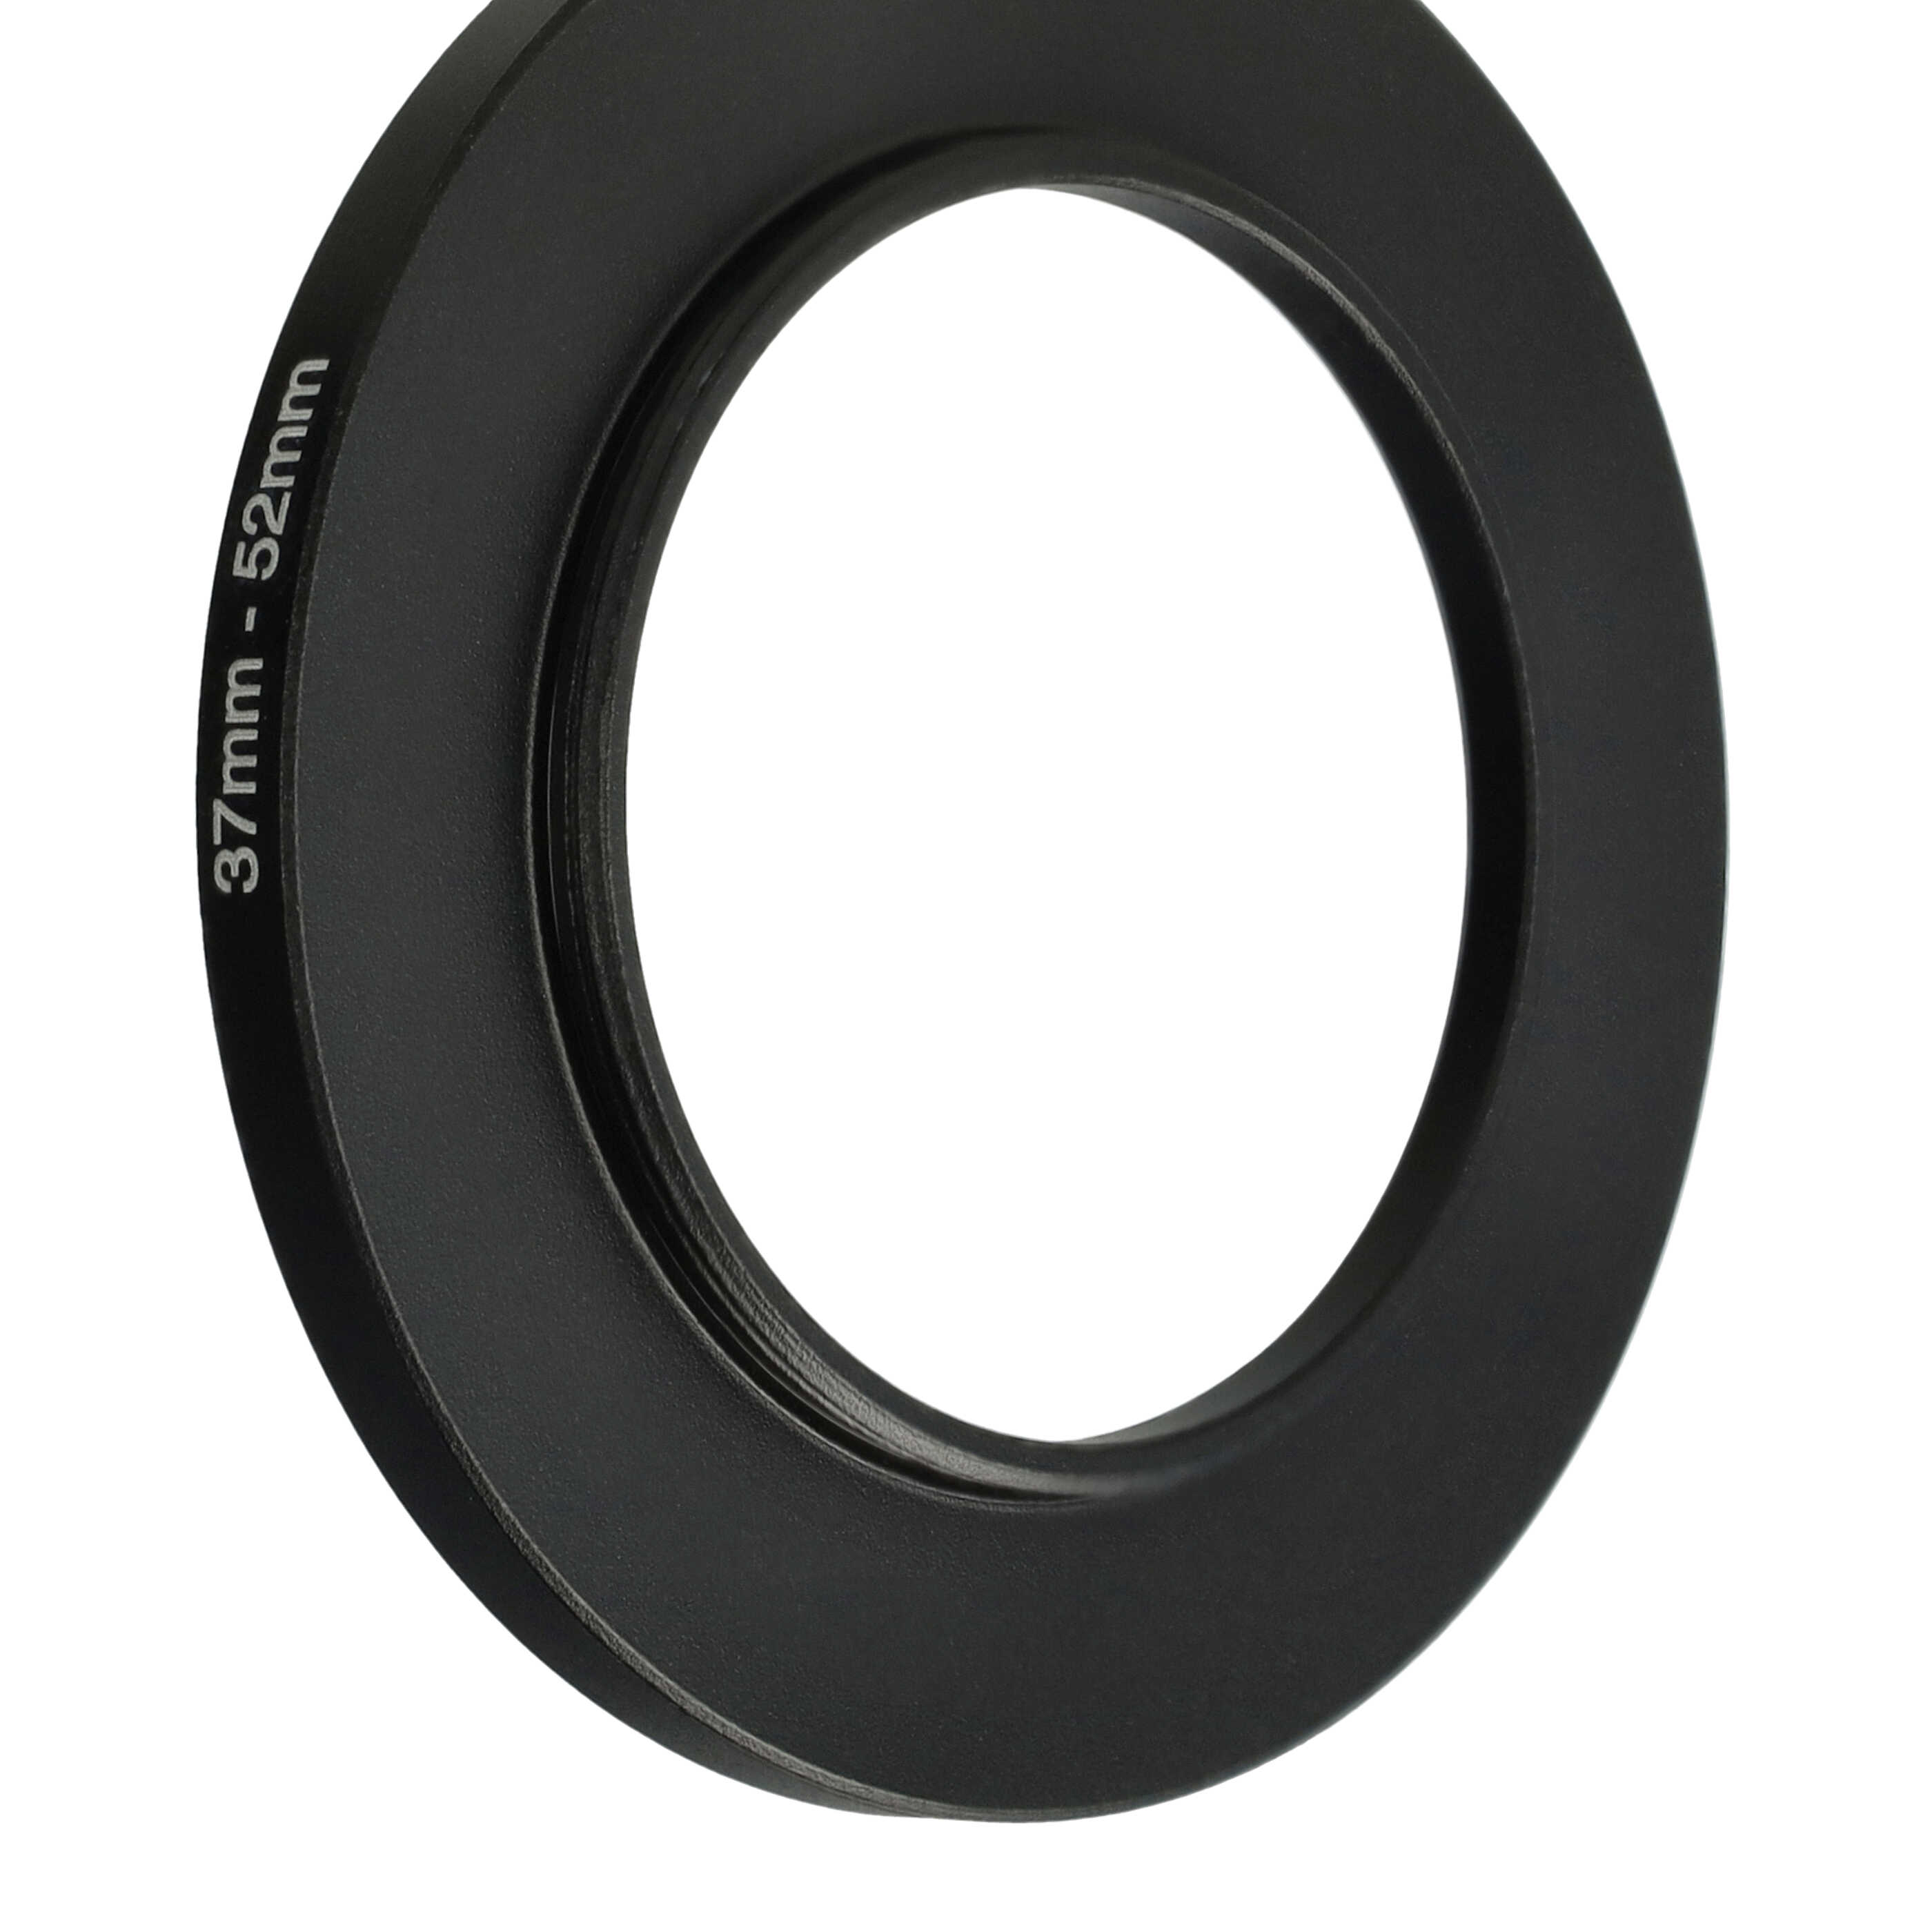 Step-Up-Ring Adapter 37 mm auf 52 mm passend für diverse Kamera-Objektive - Filteradapter